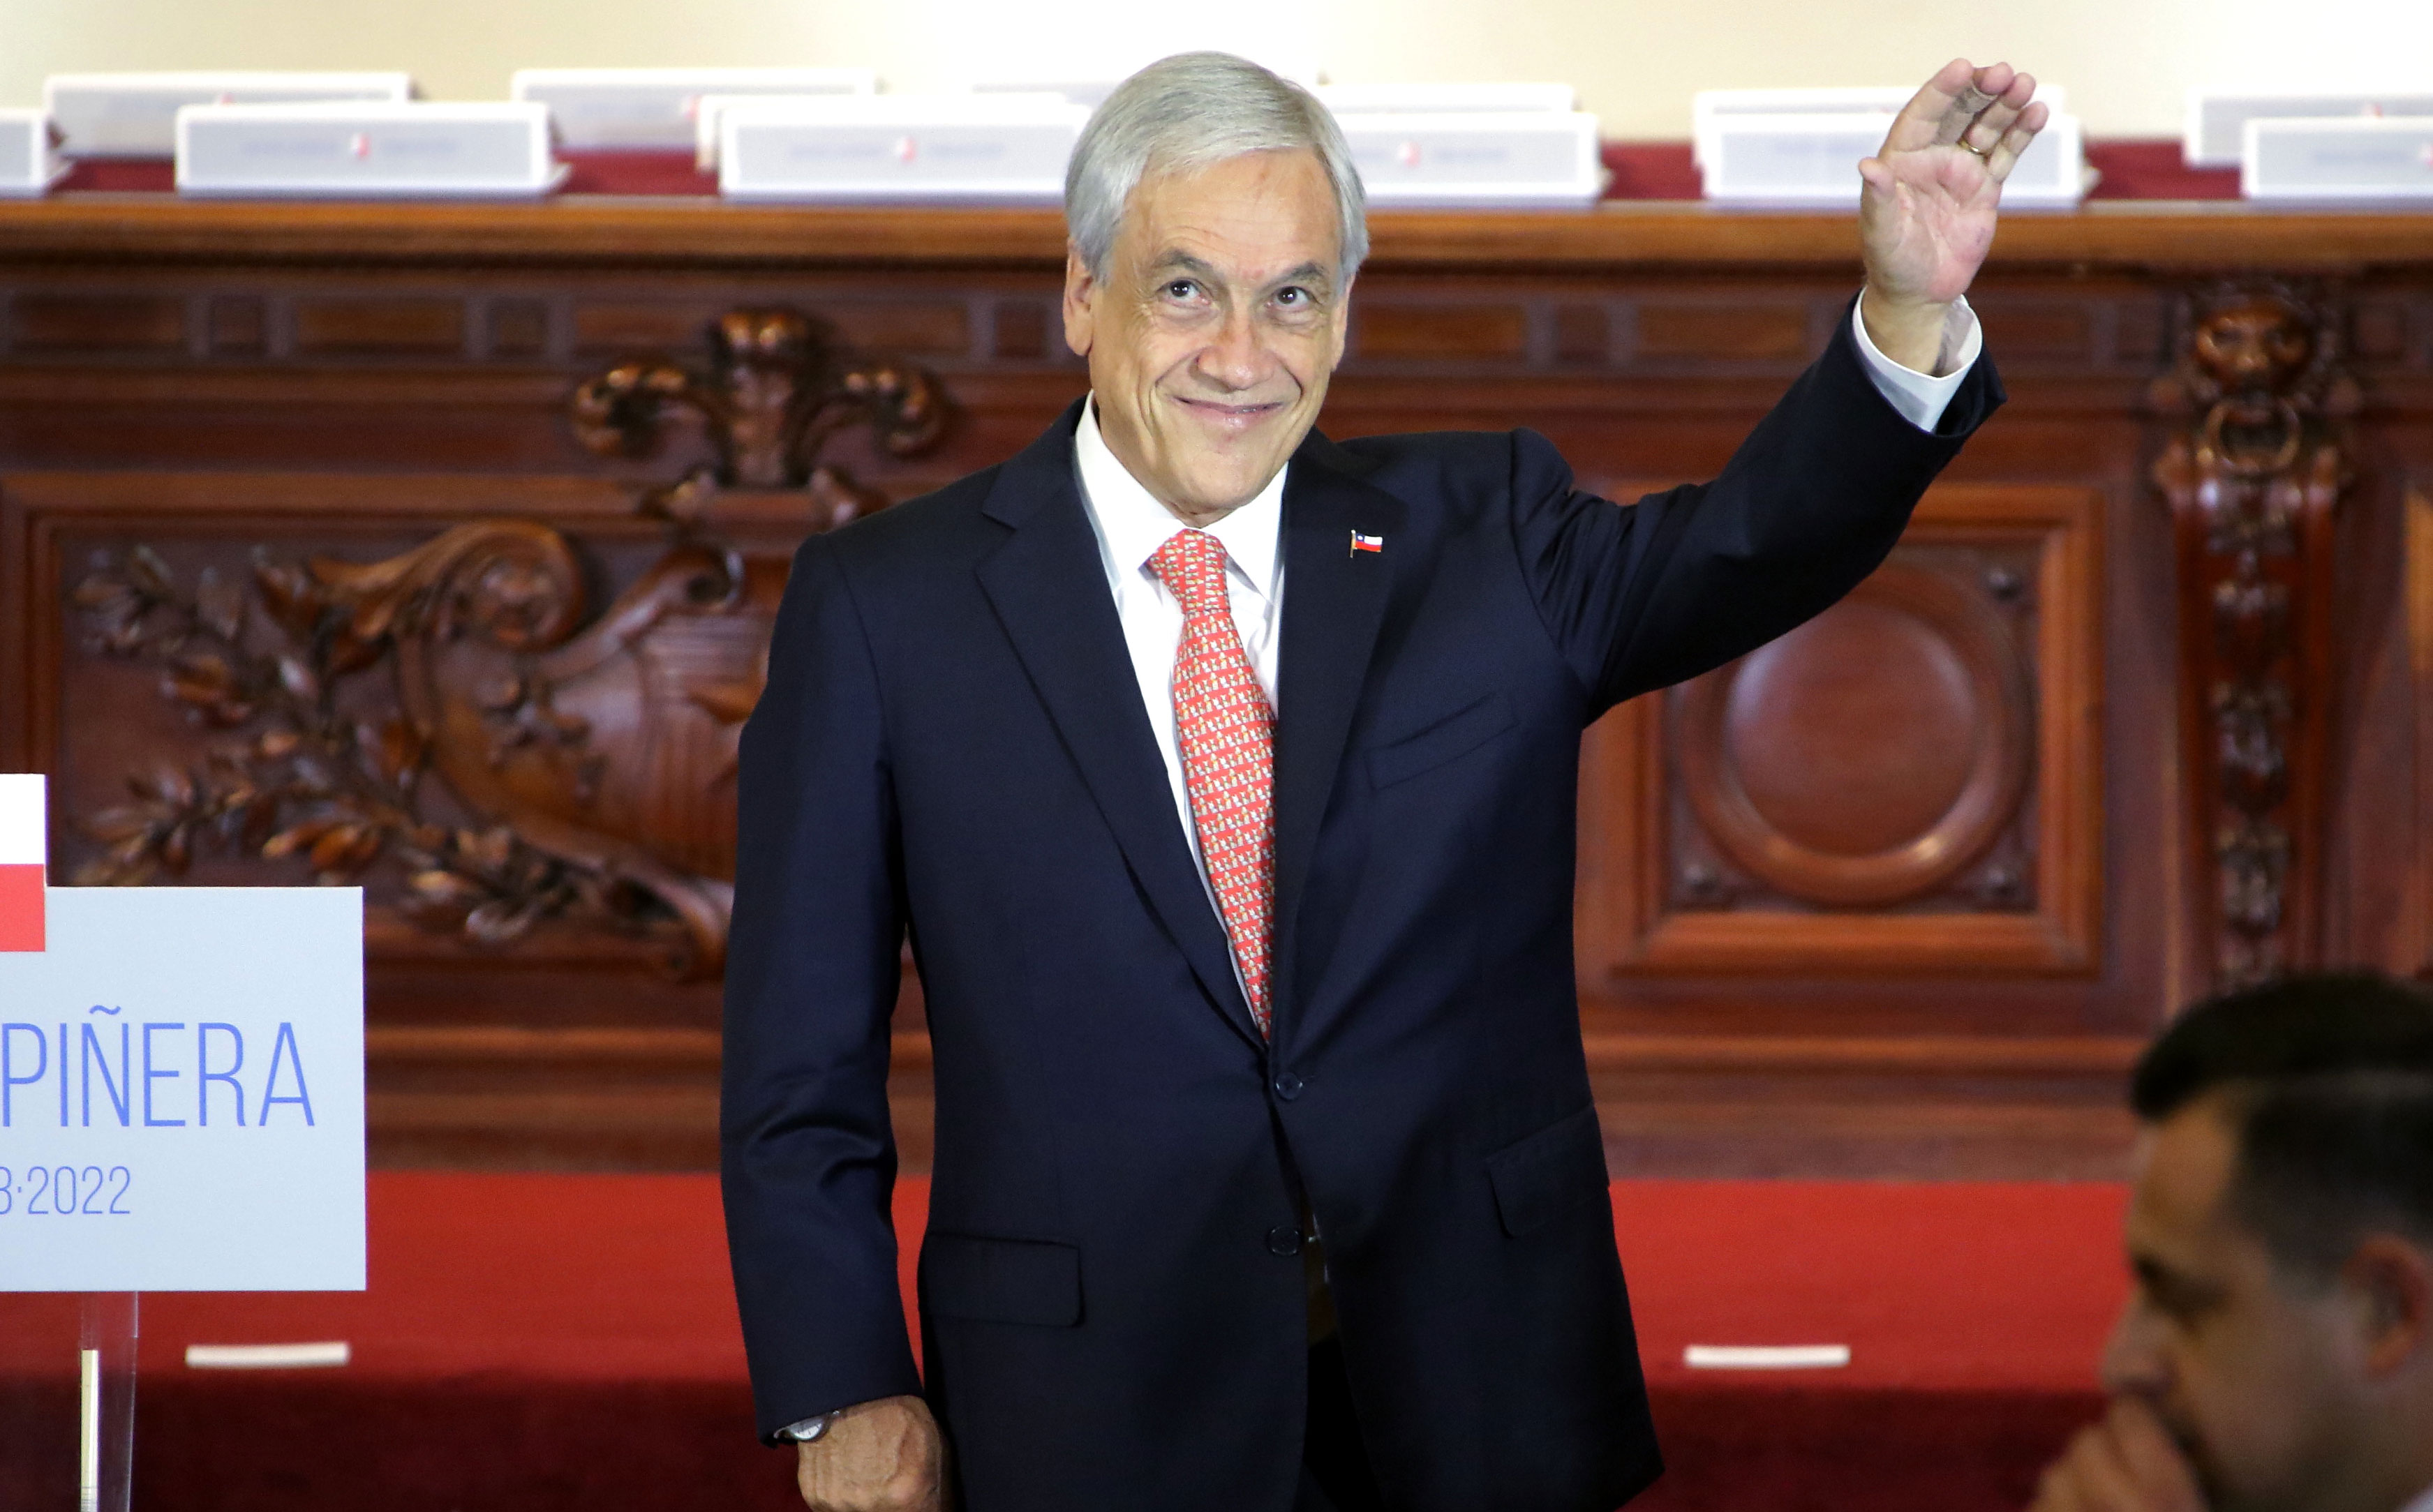 Los criterios que podría utilizar Piñera para los próximos nombramientos de subsecretarios e intendentes